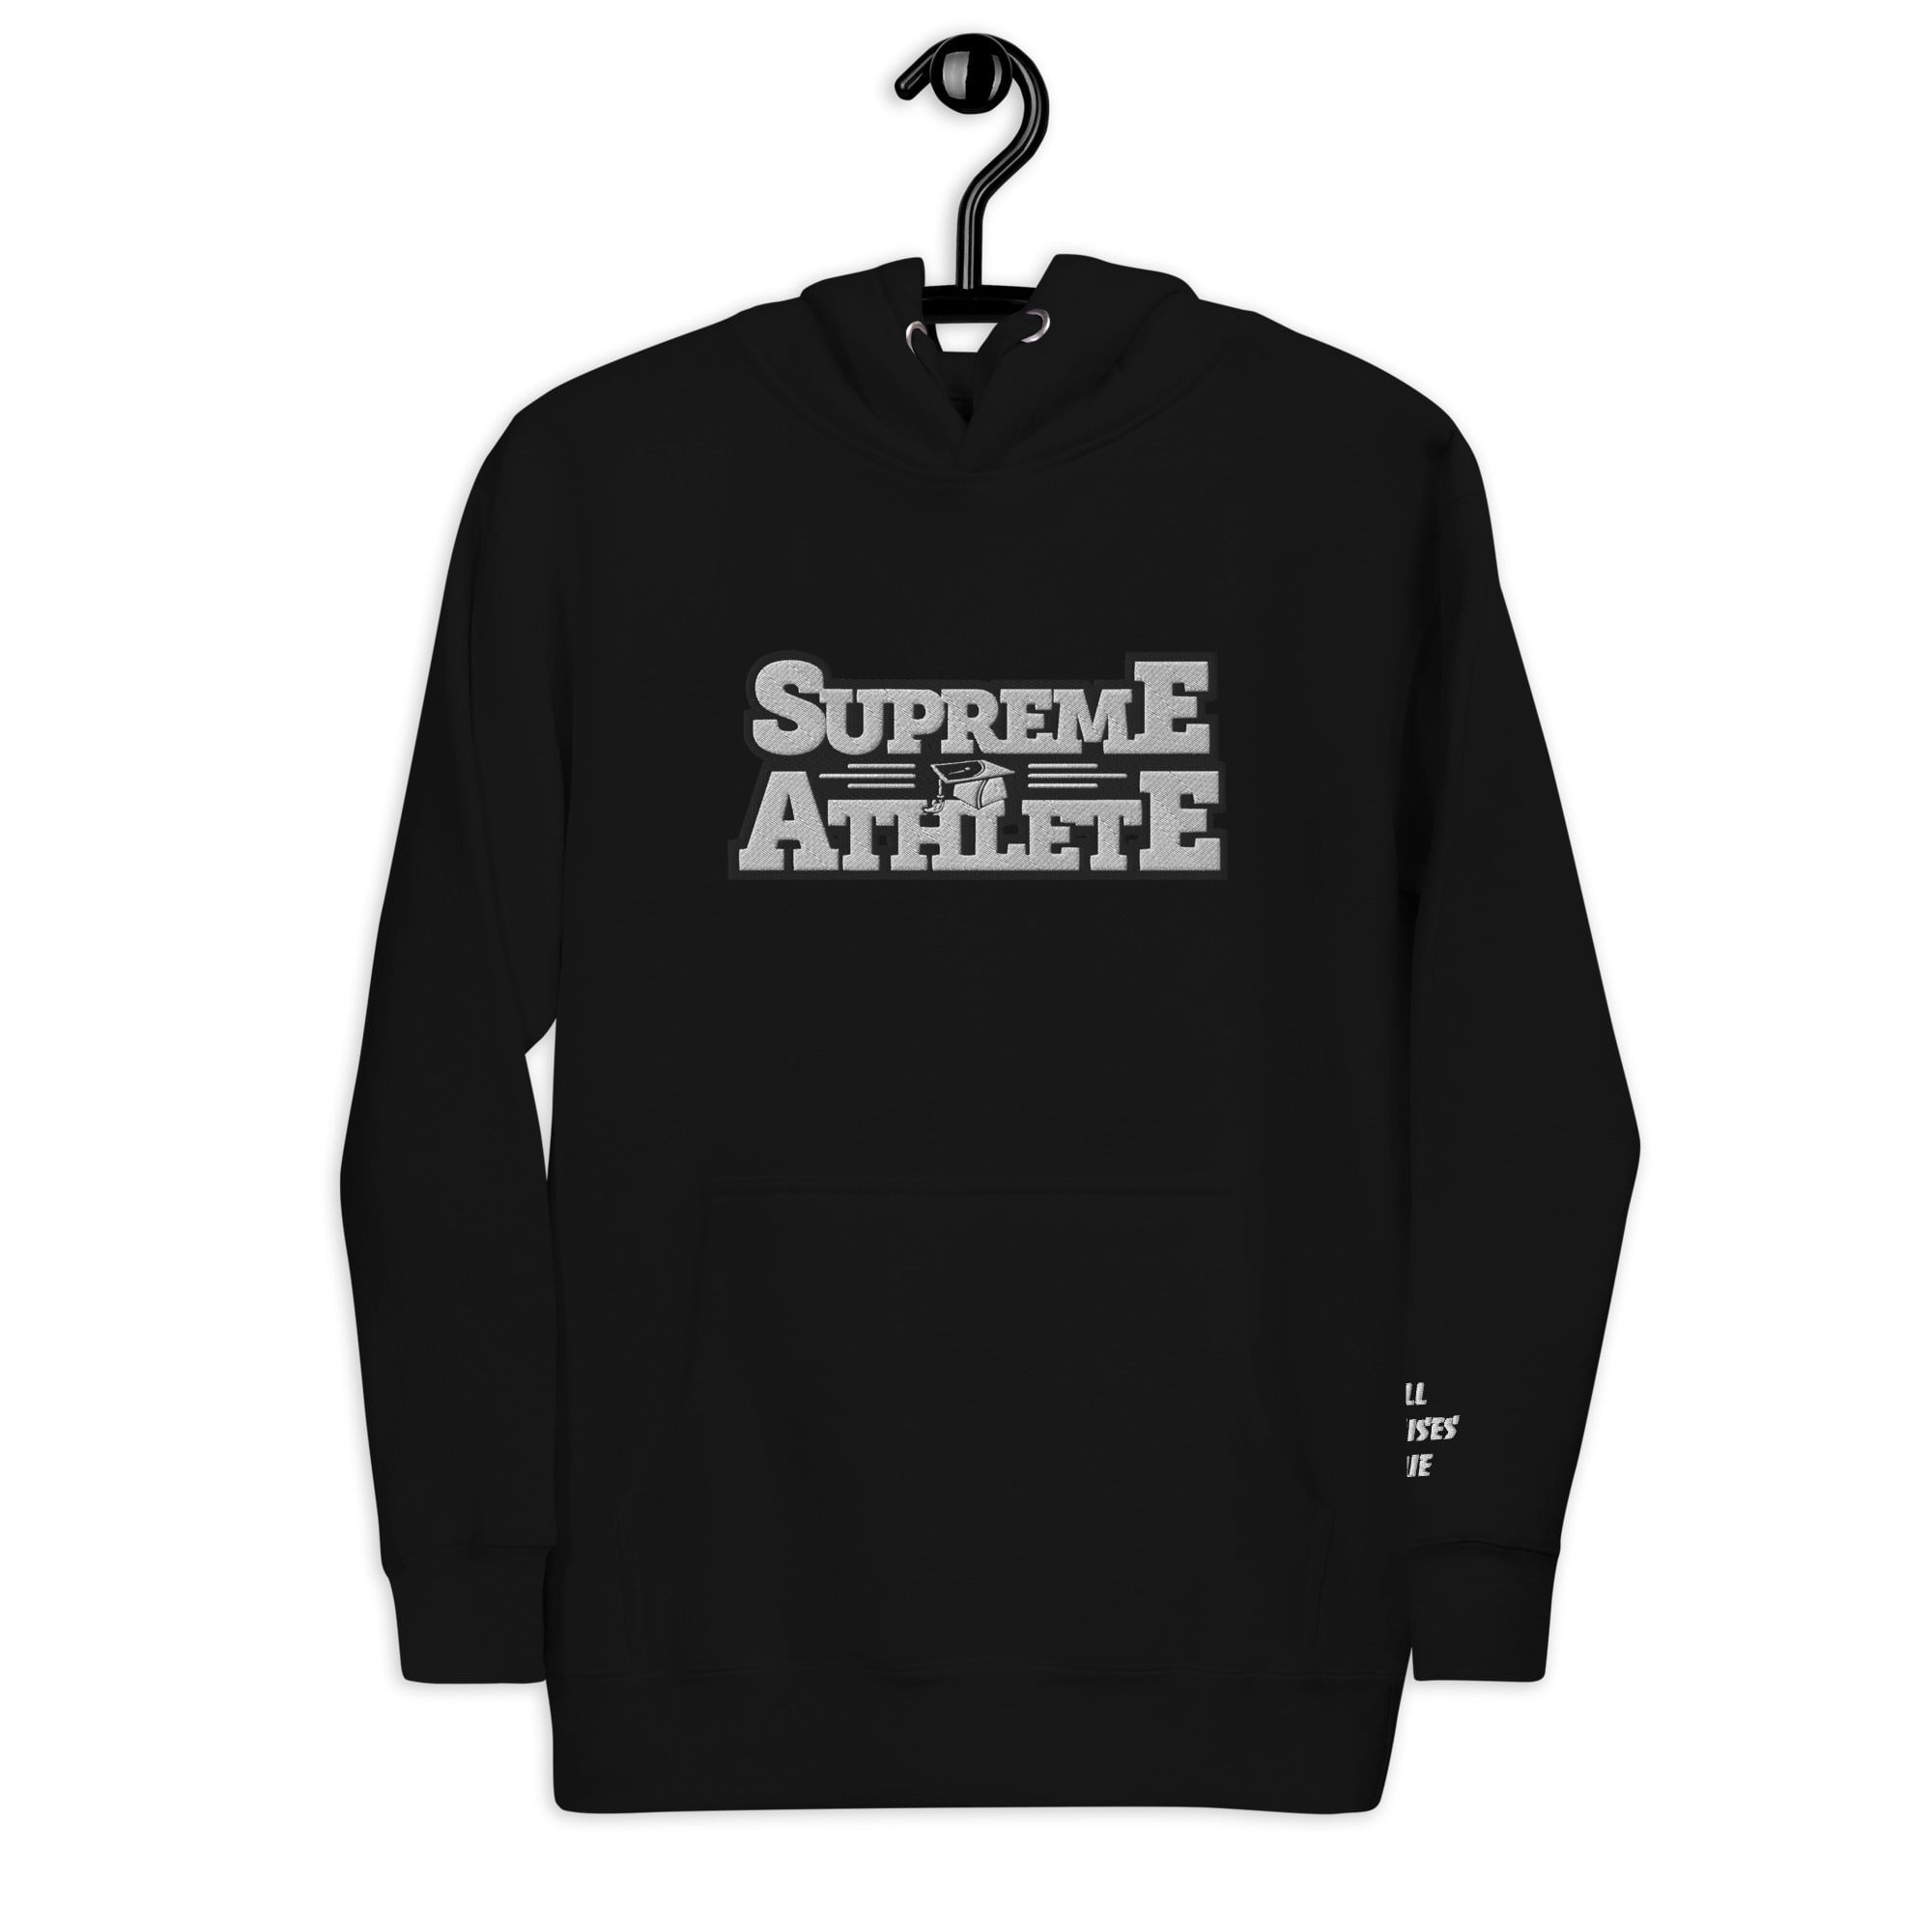 Hoodies - Supreme Athlete